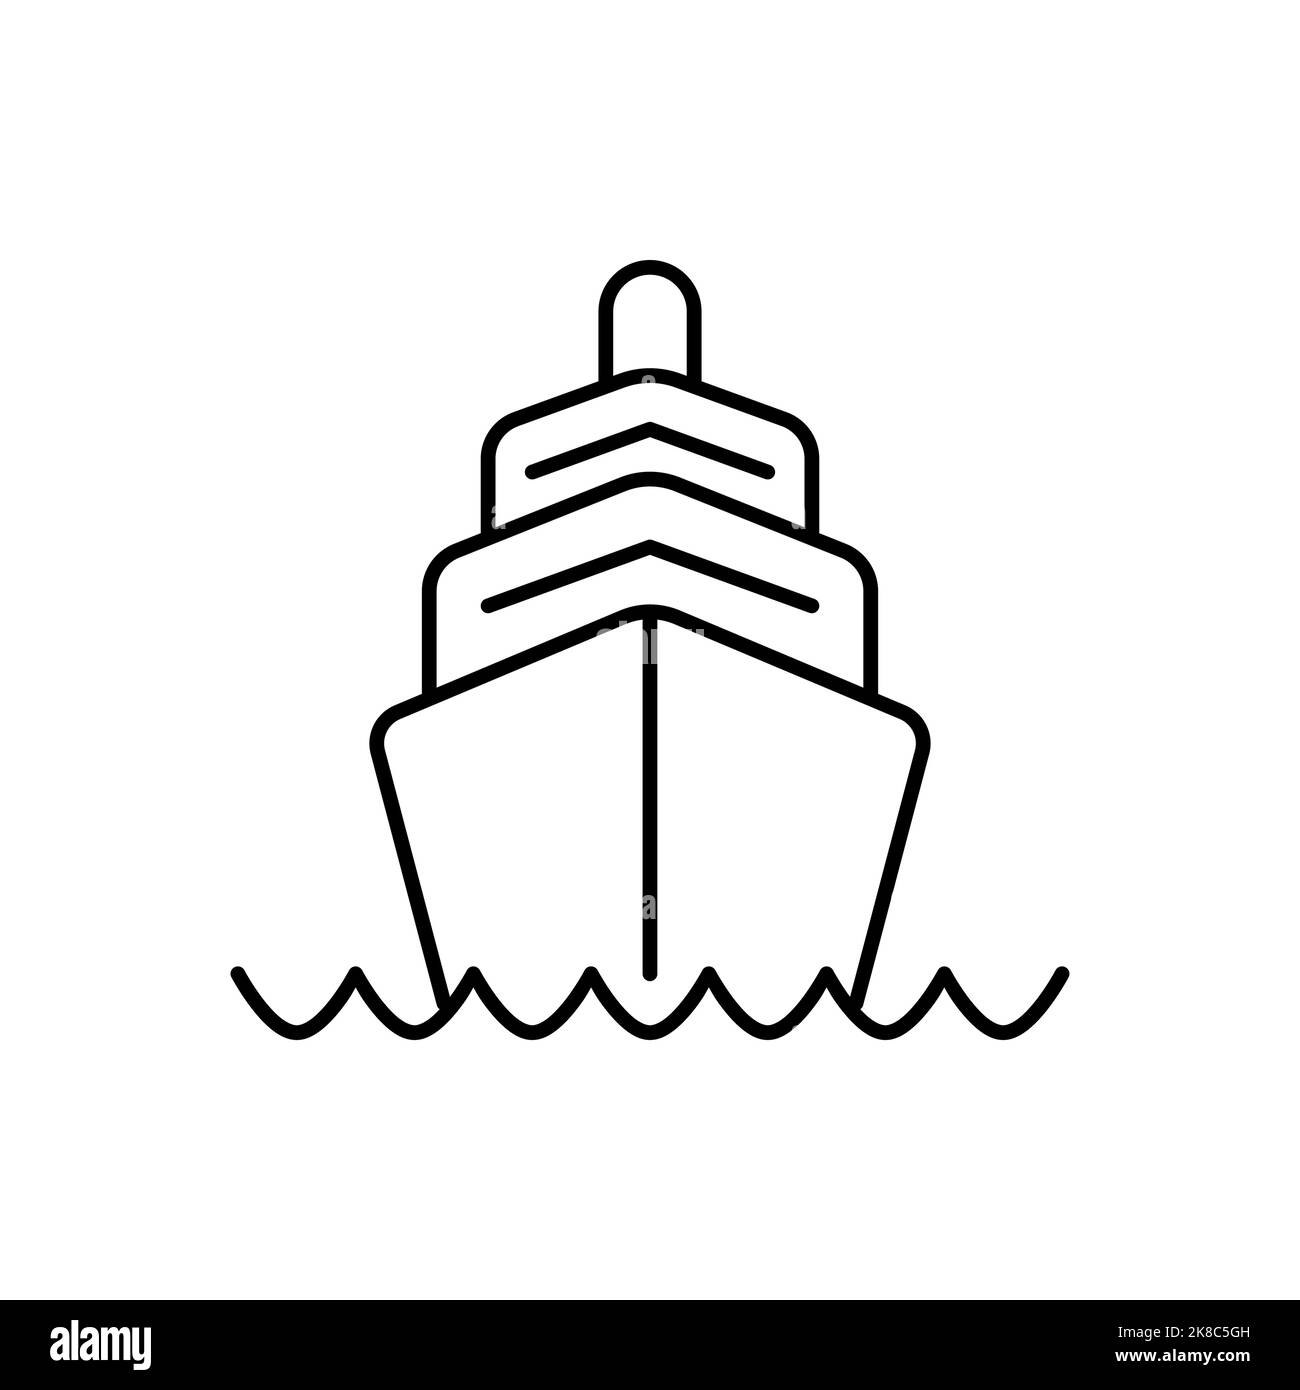 Icona della nave da crociera, viaggia attraverso l'oceano a bordo di uno yacht di lusso. Illustrazione Vettoriale